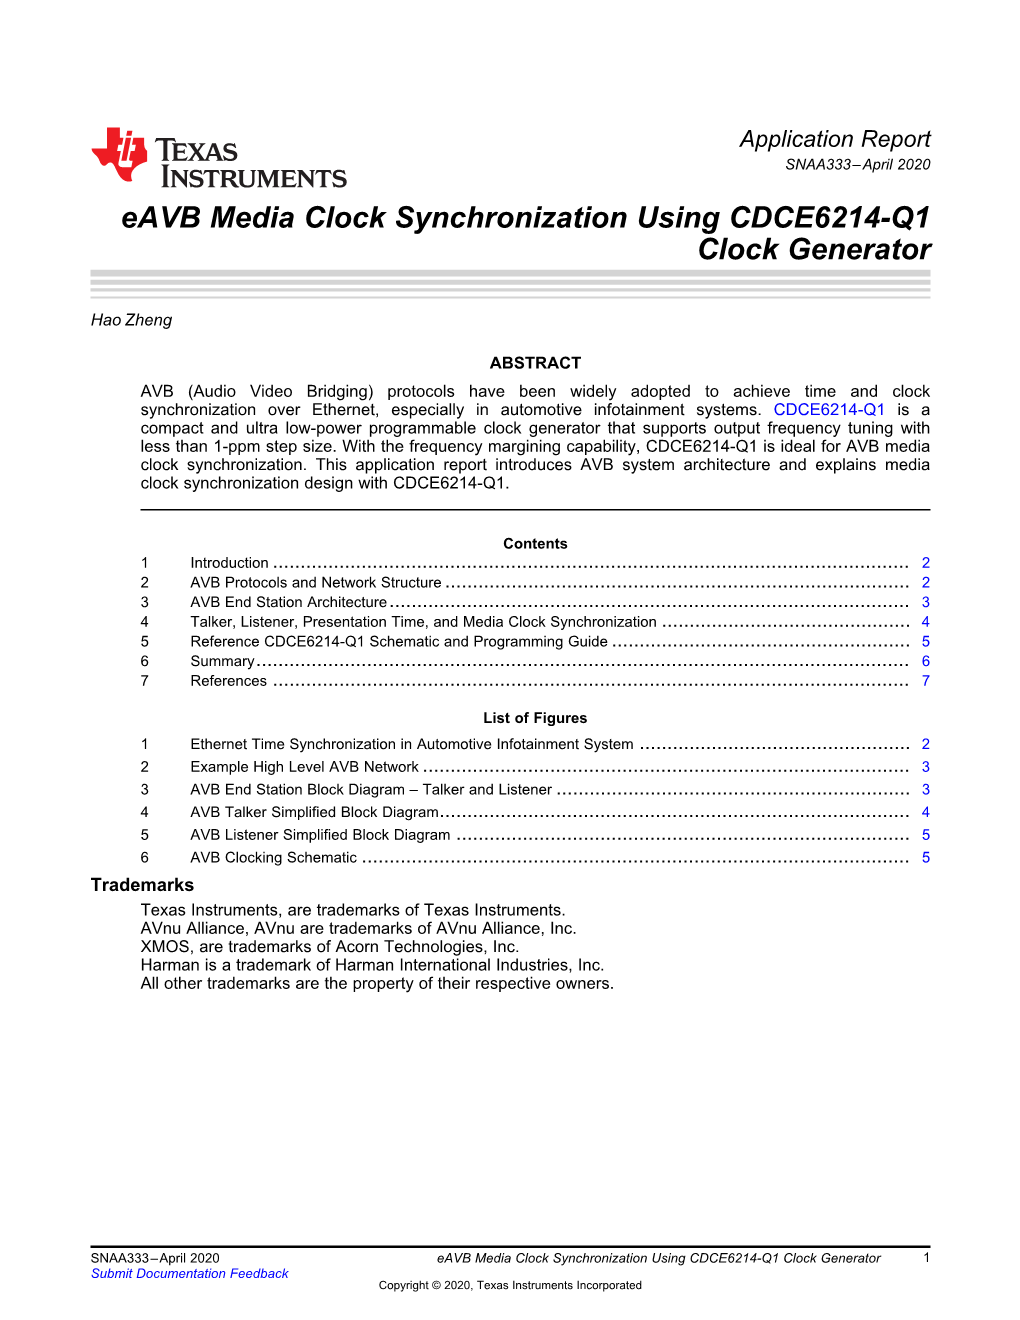 Eavb Media Clock Synchronization Using CDCE6214-Q1 Clock Generator